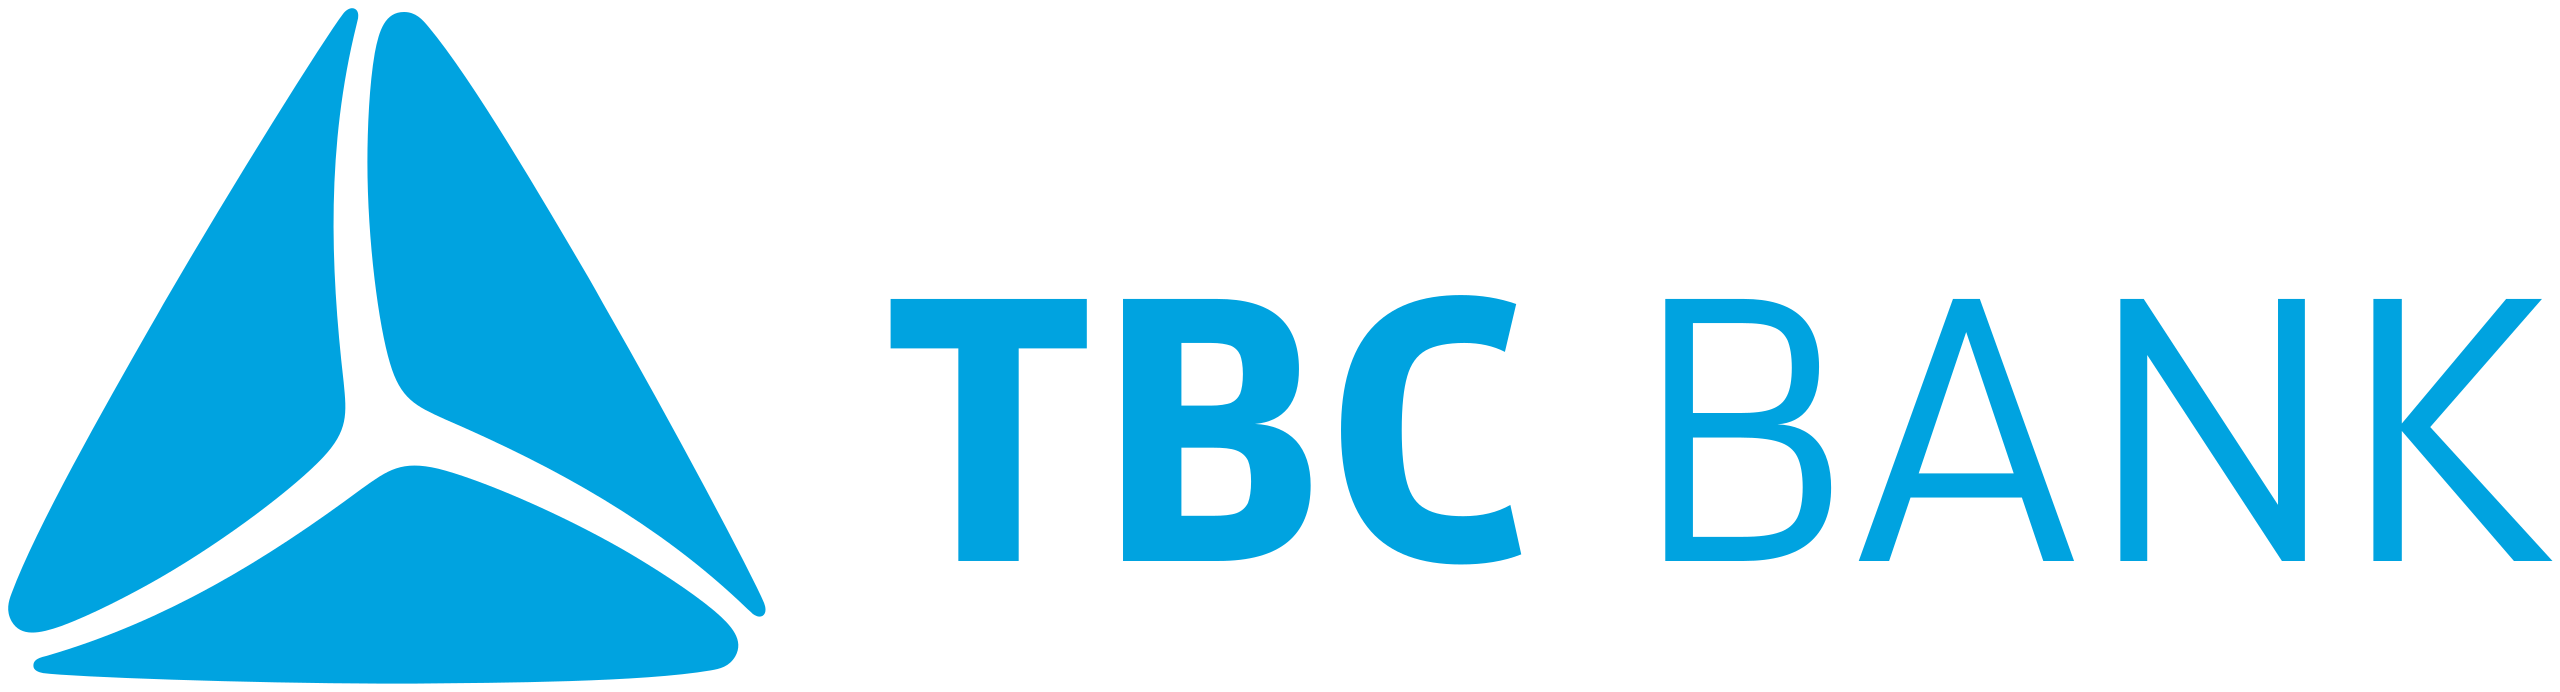 TBC-bank logo